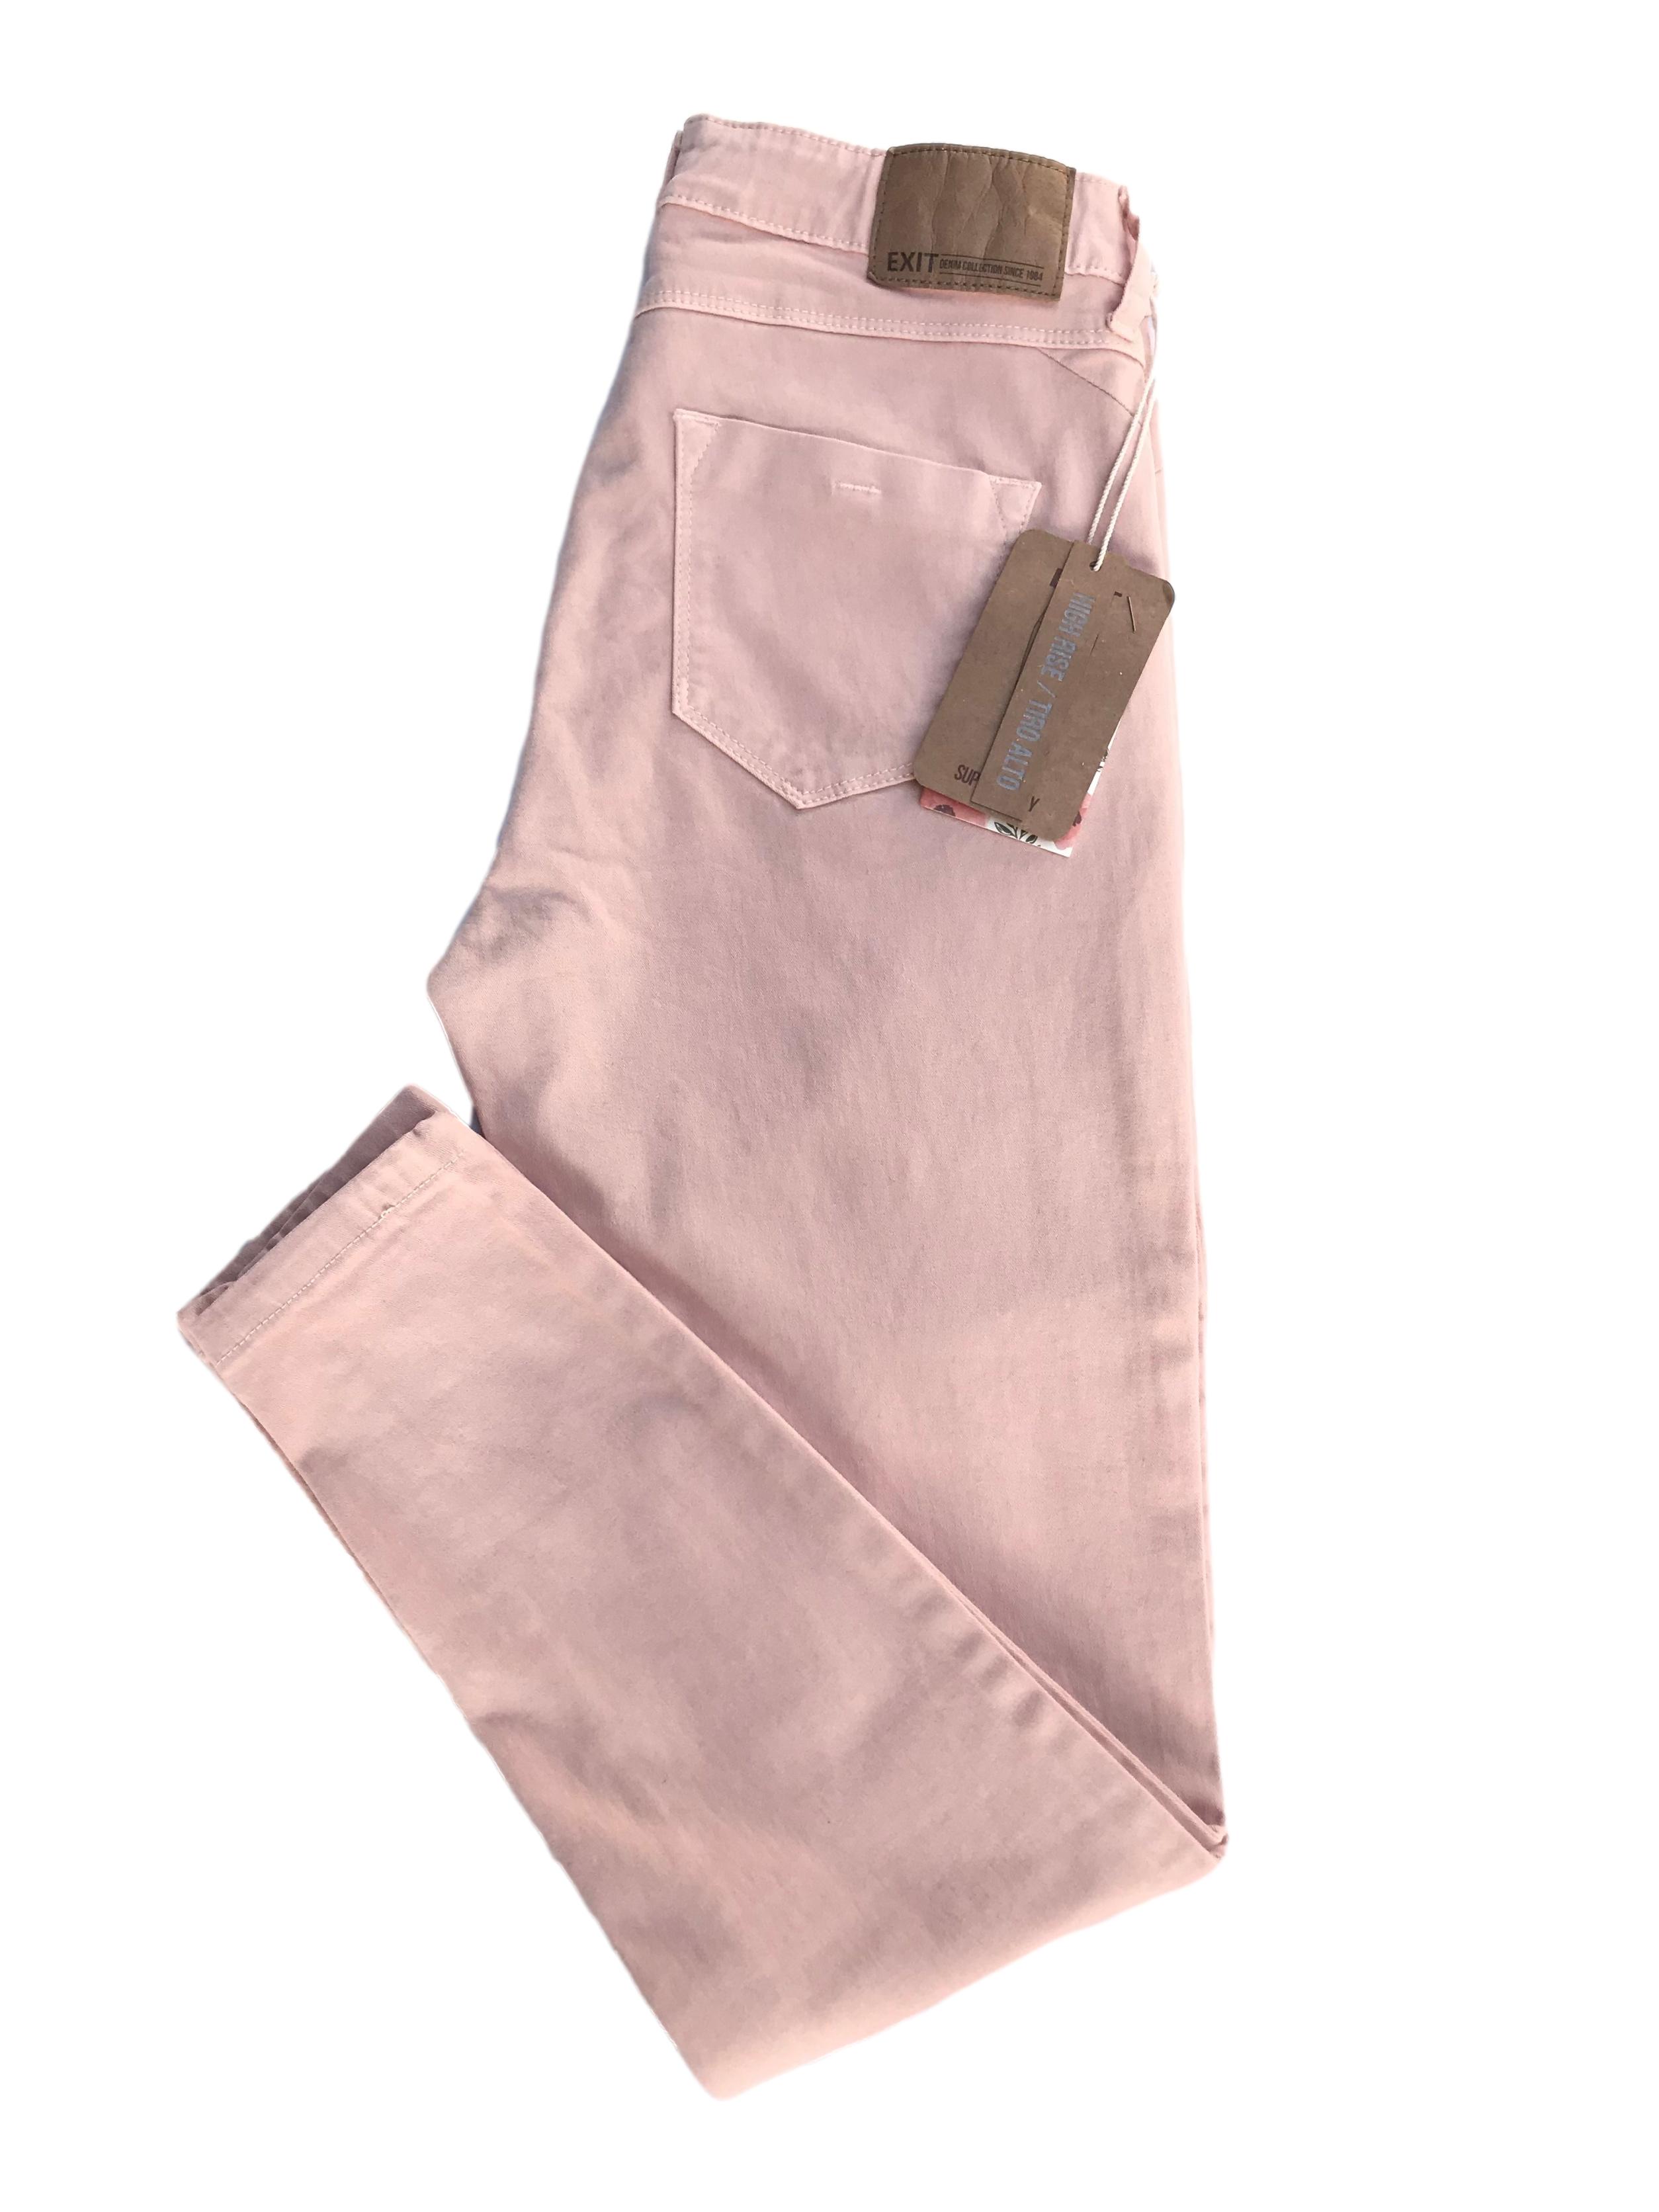 Skinny jean Exit en tono melón, a la cintura, five pocket, 98% algodón con spandex. Cintura 70cm sin estirar Largo 90cm. Nuevo con etiqueta